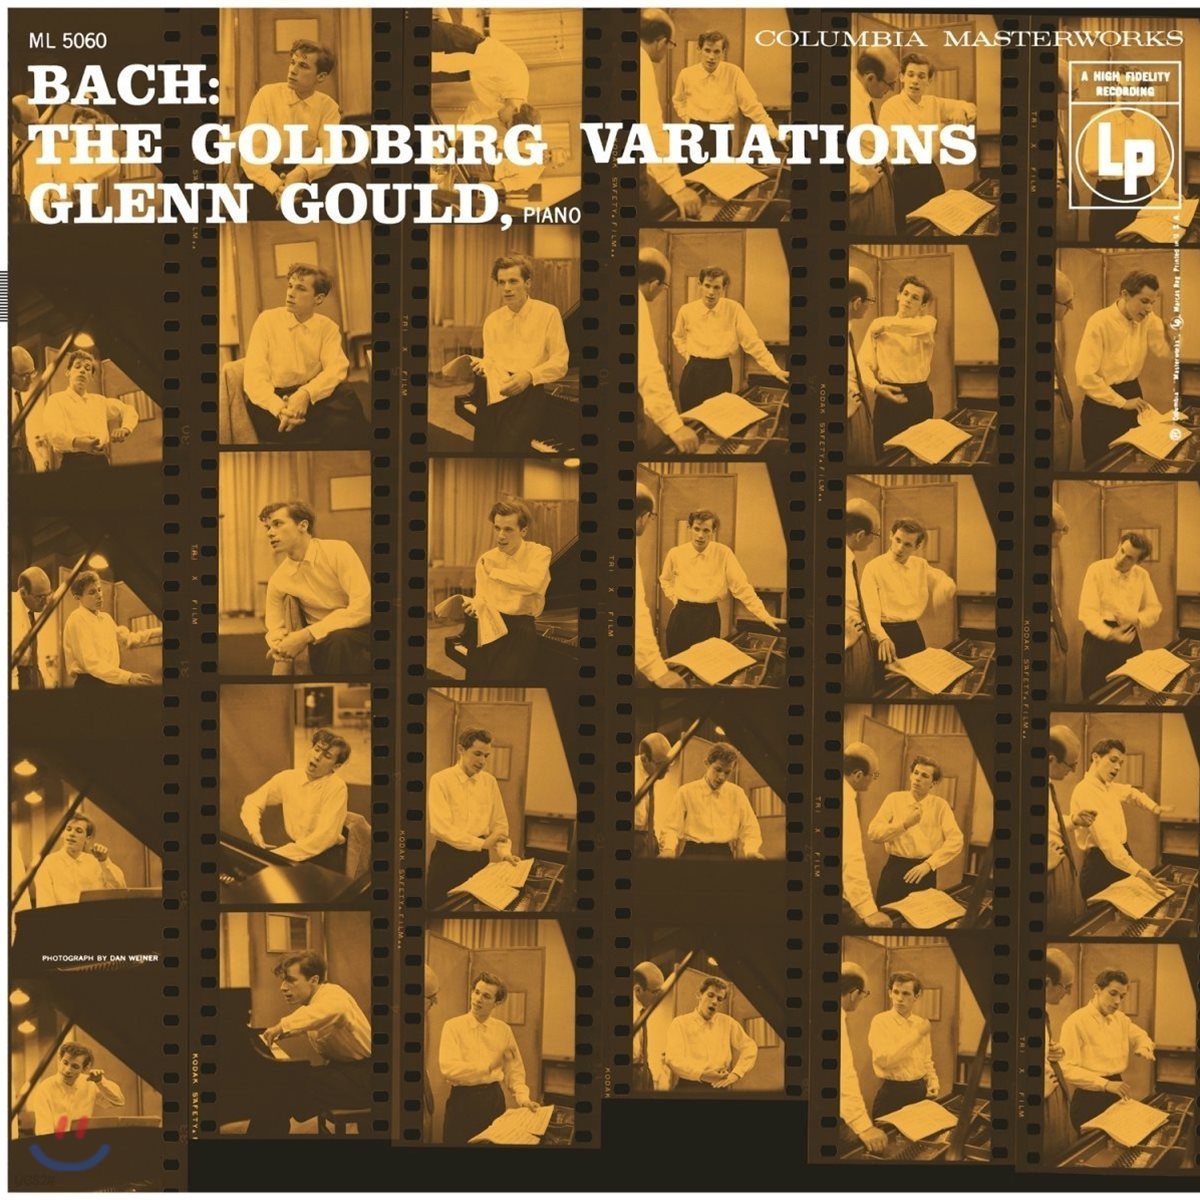 Glenn Gould 바흐: 골드베르크 변주곡 - 글렌 굴드 1955년 녹음 리마스터 에디션 (J.S. Bach: Goldberg Variations BWV988 - 1955 Recording)